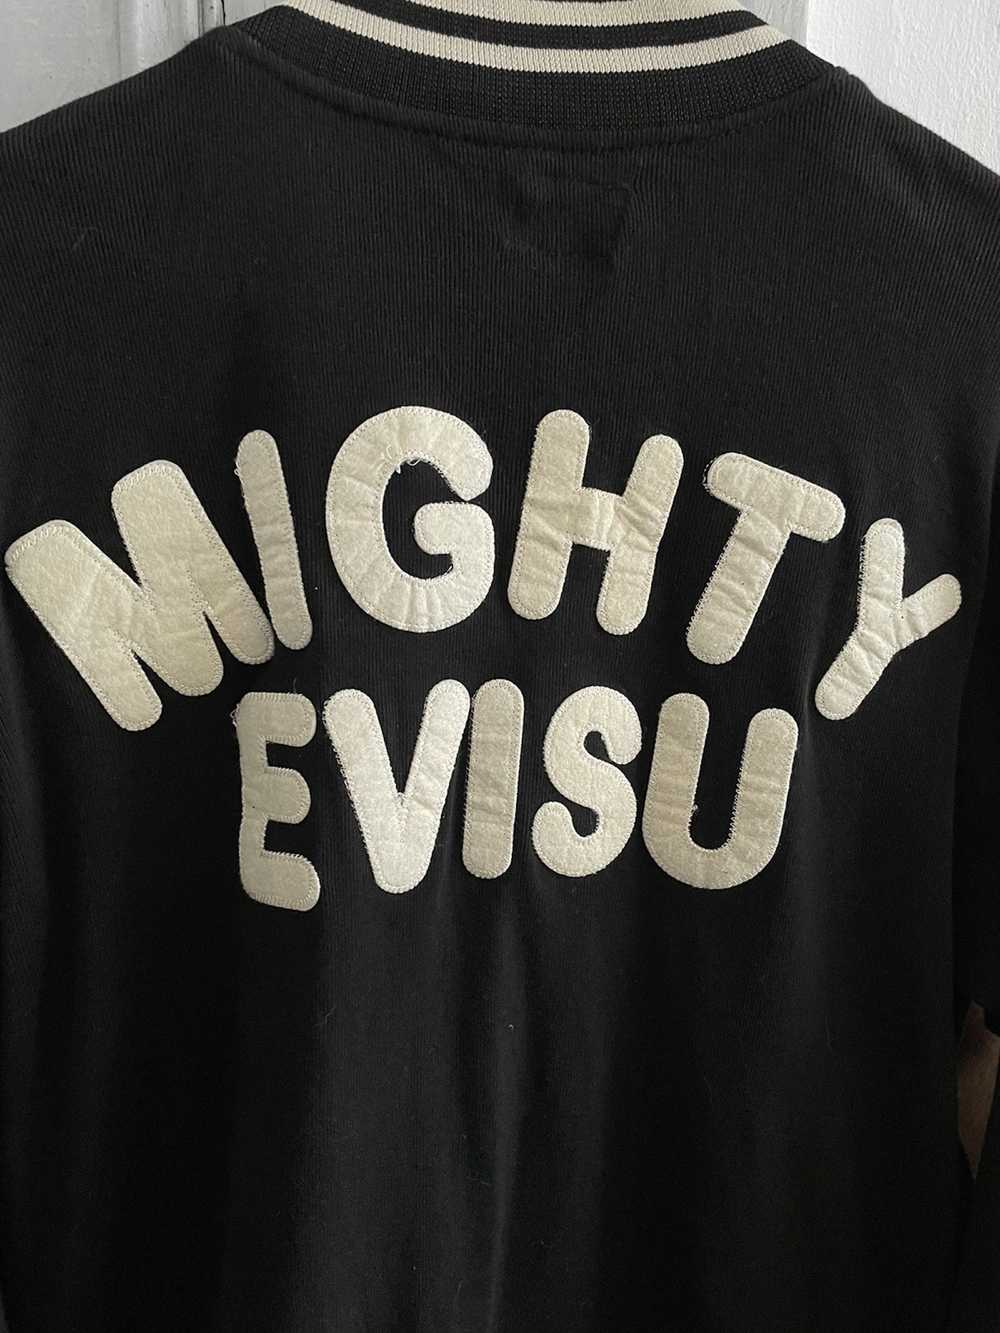 Evisu Mighty Evisu Jacket - Gem